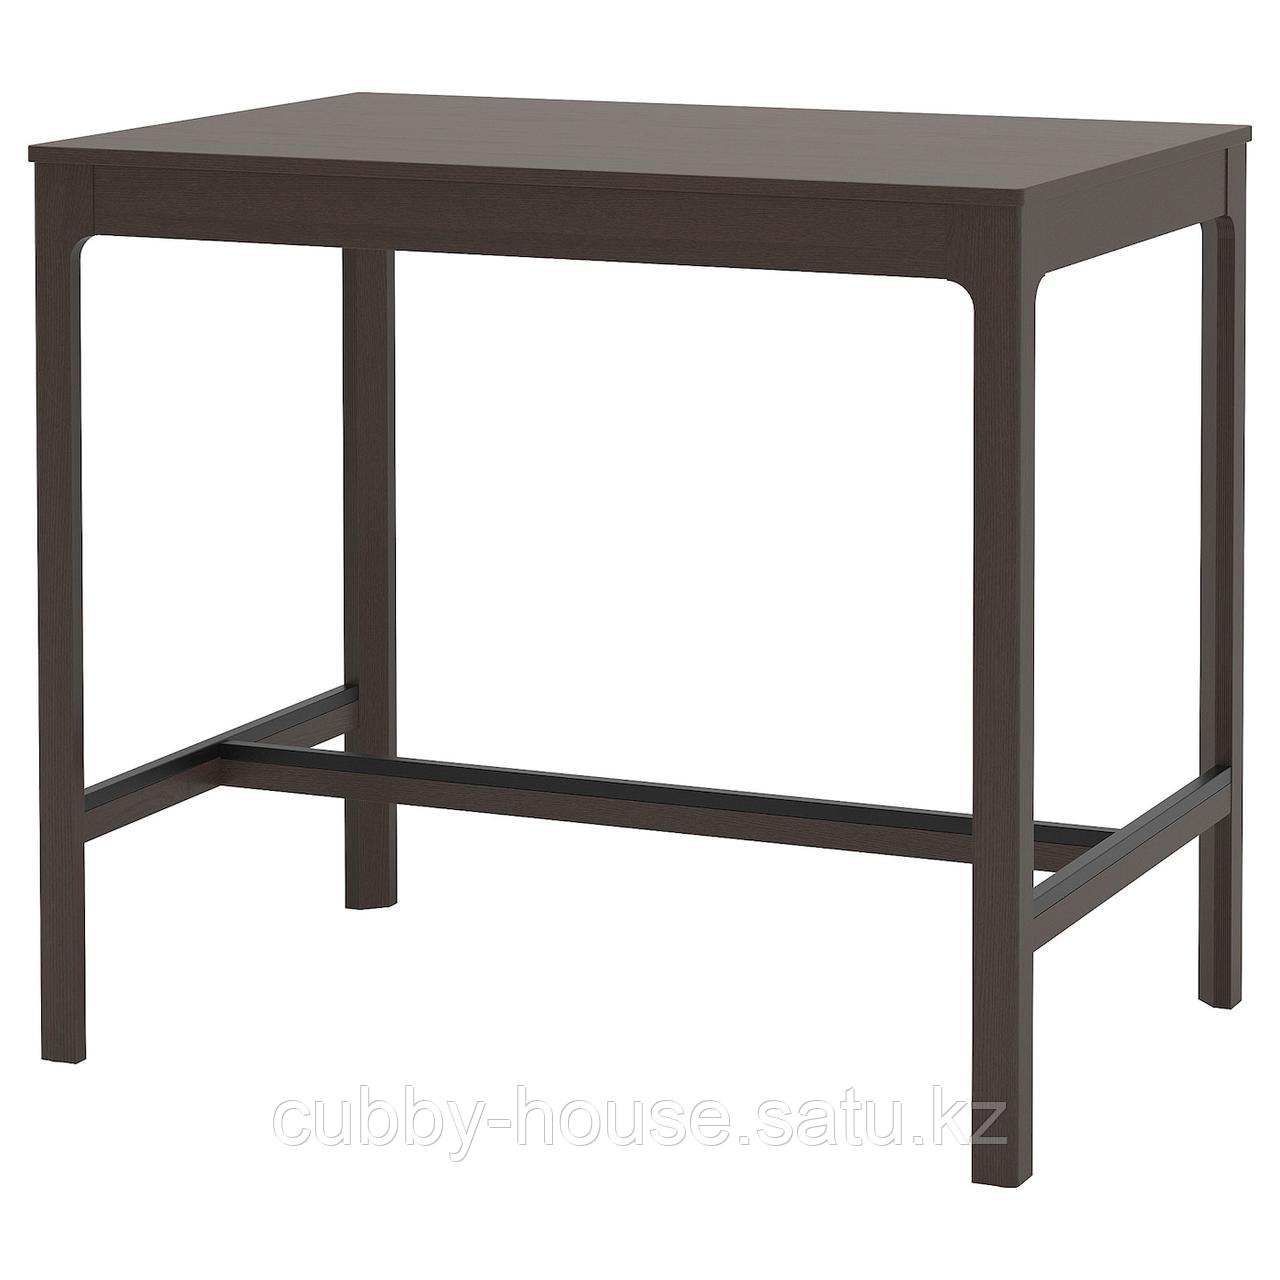 EKEDALEN ЭКЕДАЛЕН Барный стол, темно-коричневый120x80x105 см